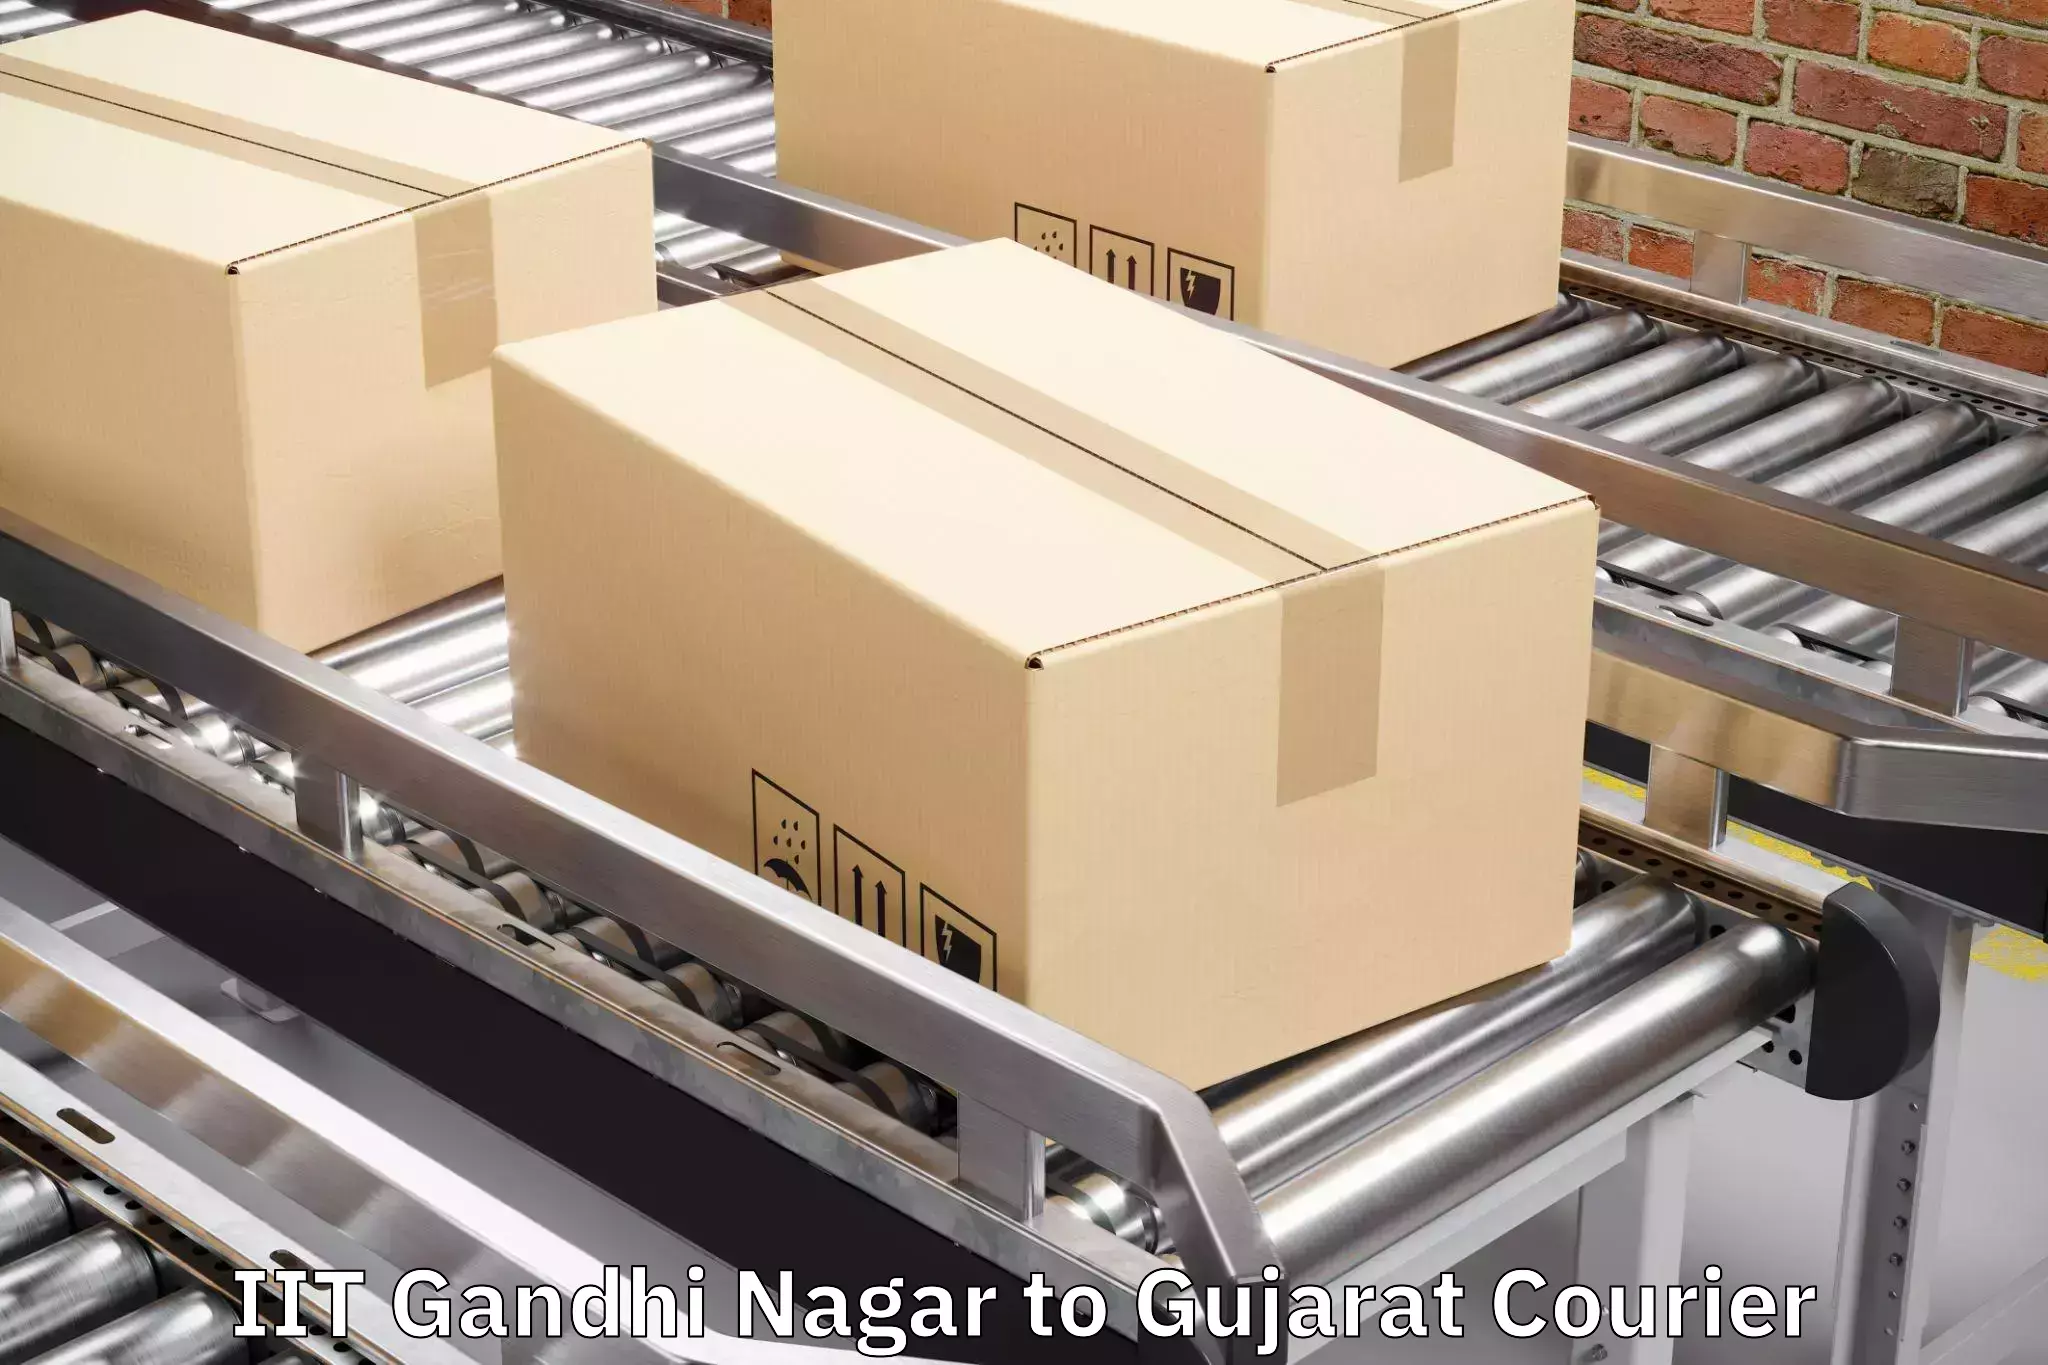 Luggage transport company IIT Gandhi Nagar to Karjan